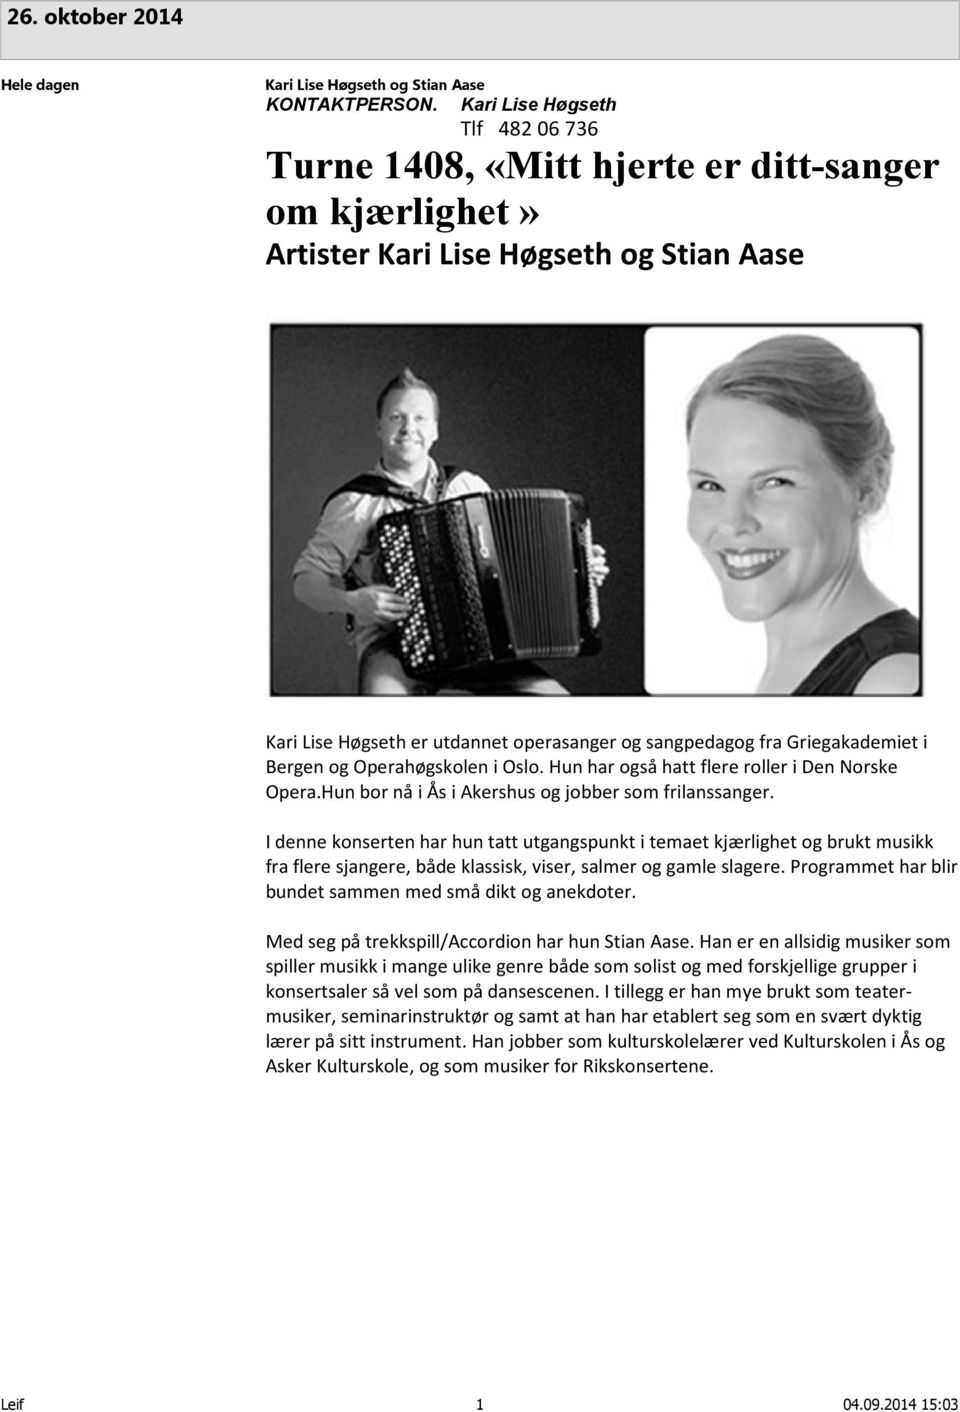 Griegakademiet i Bergen og Operahøgskolen i Oslo. Hun har også hatt flere roller i Den Norske Opera.Hun bor nå i Ås i Akershus og jobber som frilanssanger.